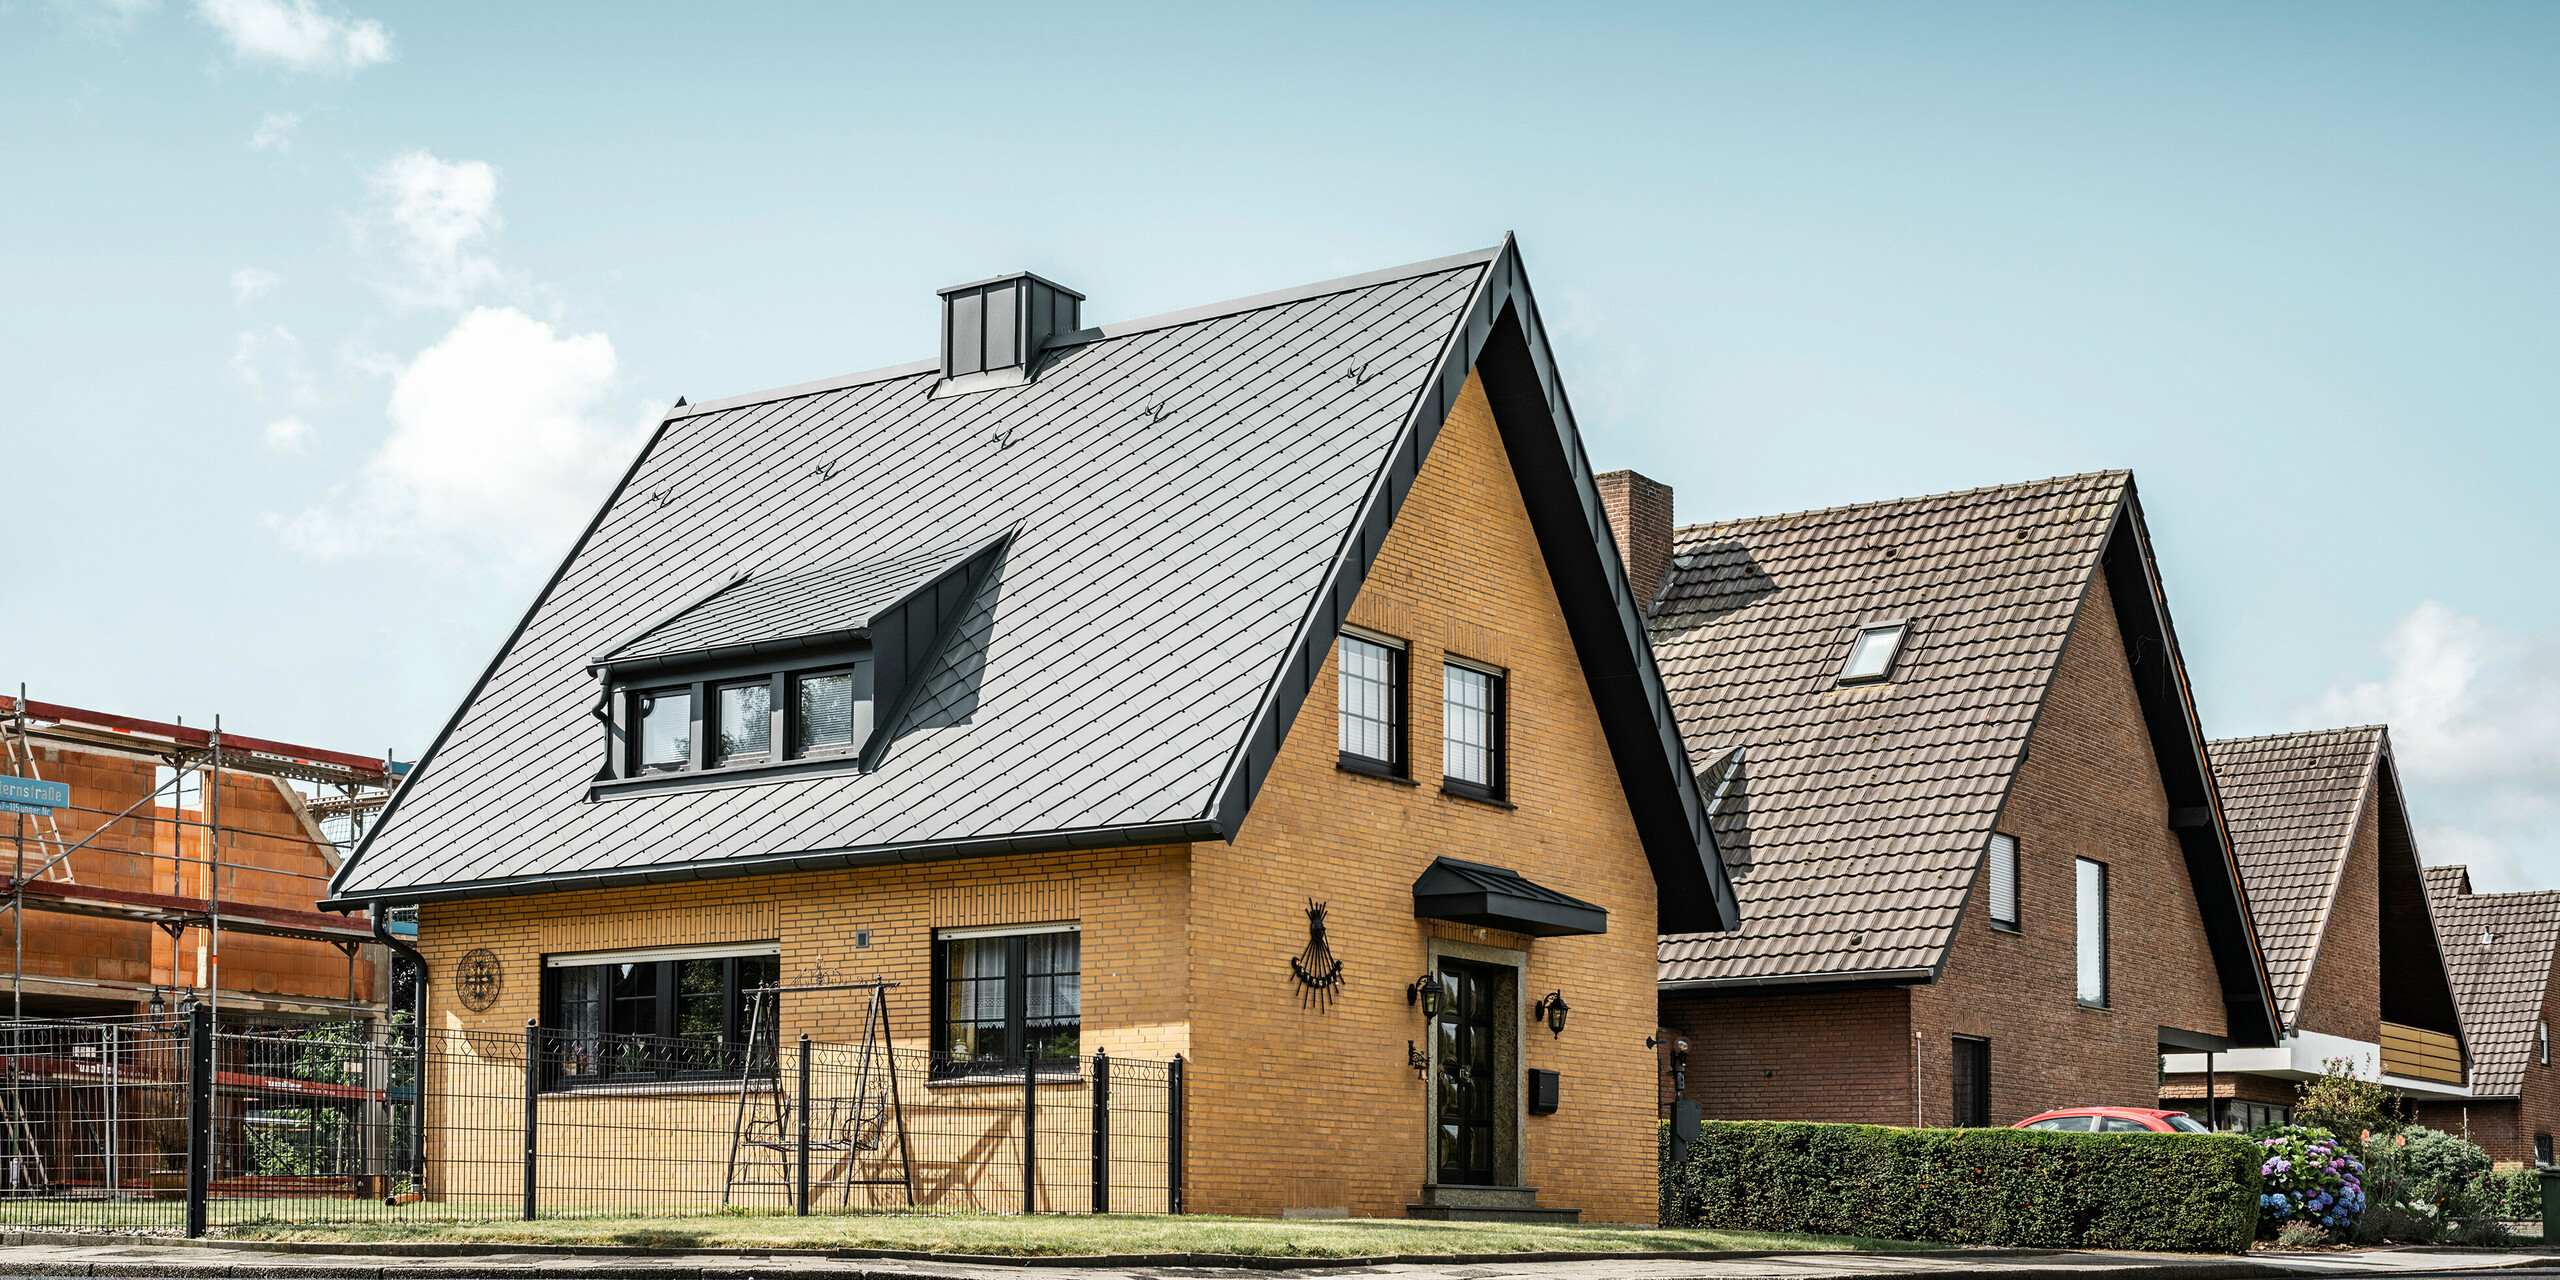 Rodinný dům s materiály PREFA vyčnívá z řady domků moderním vzhledem a střešní krytinou 